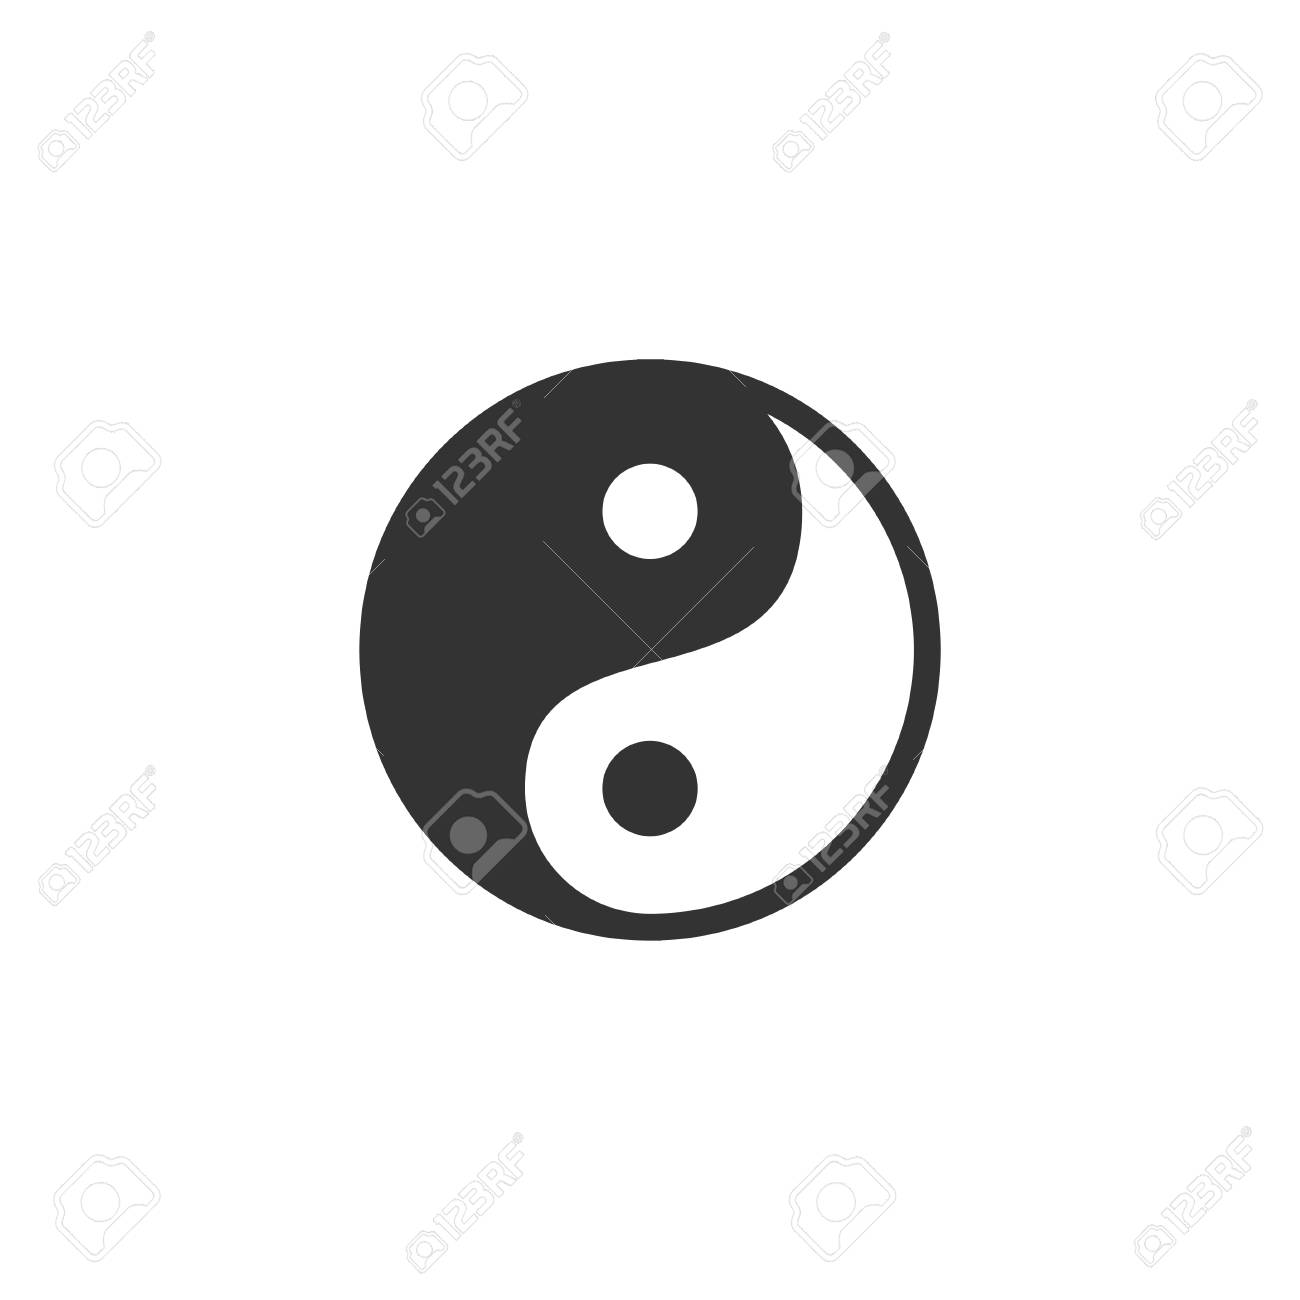 Yin Yang Black Icon Flat On White Background Royalty